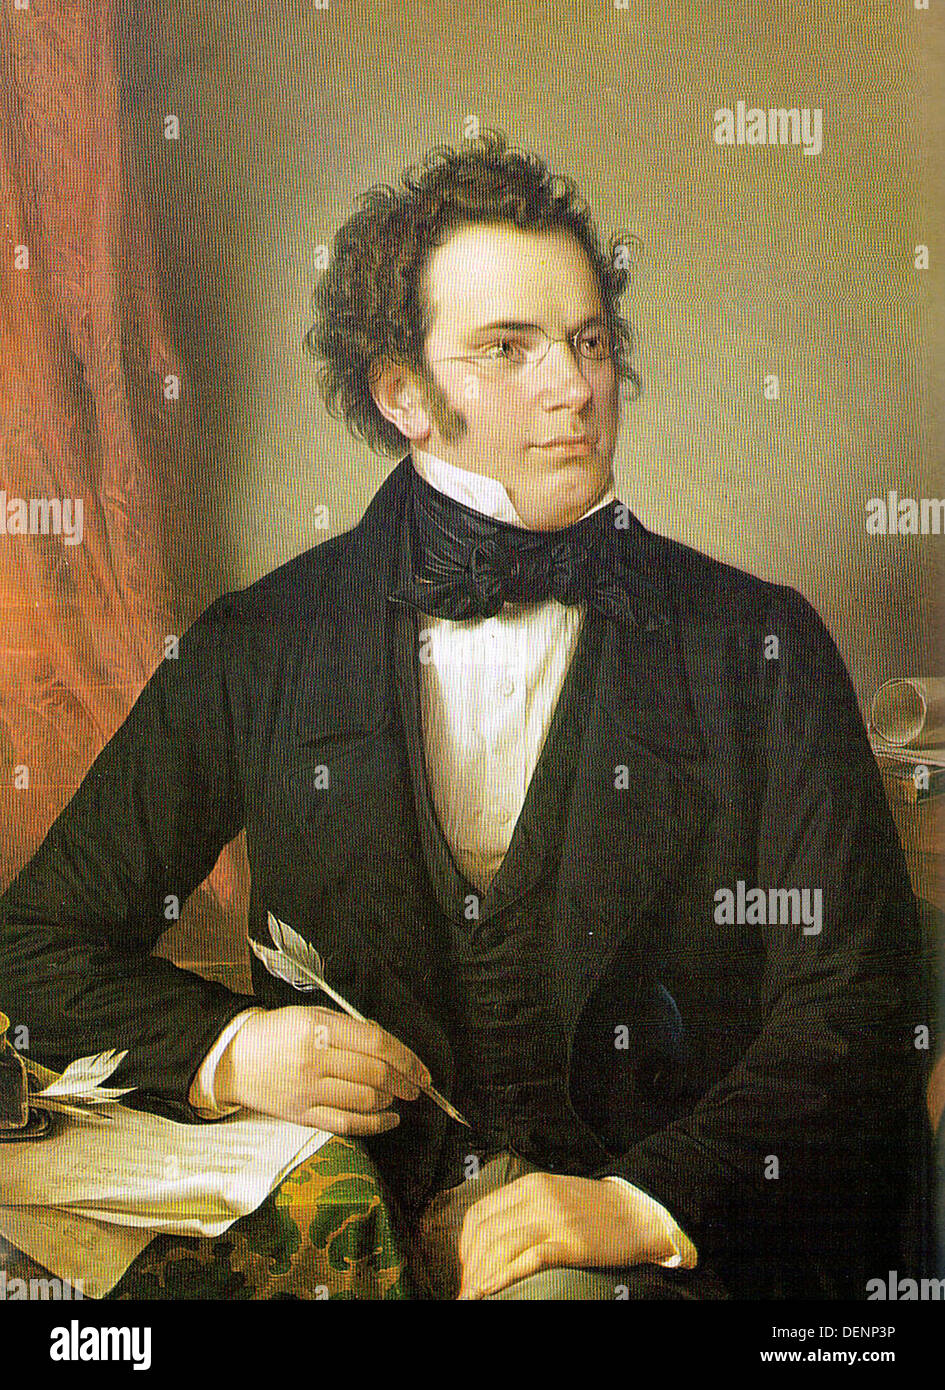 Franz Schubert, Austrian composer. Stock Photo